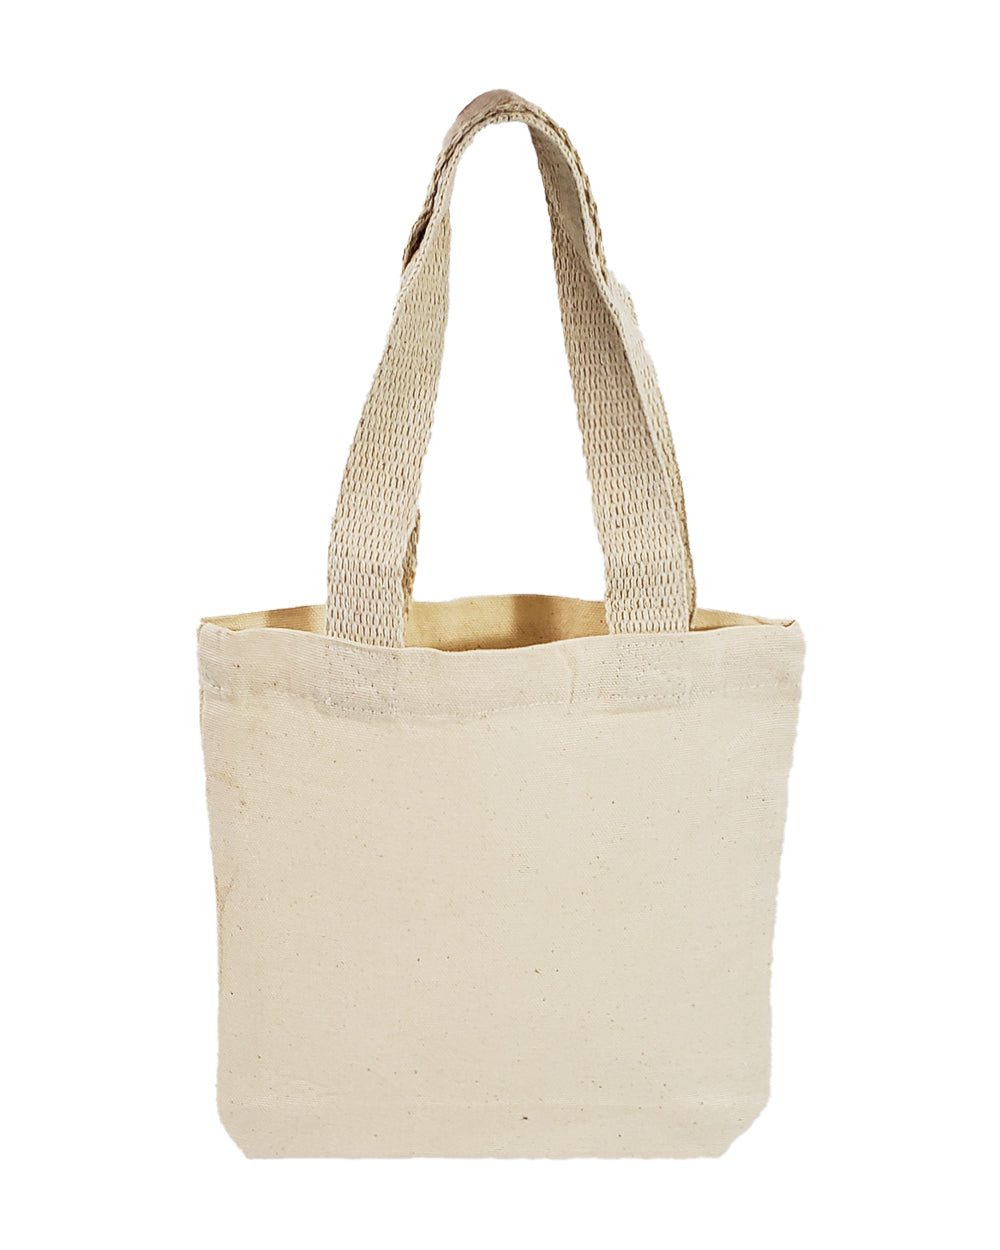 Drawstring Bag/ Cotton Potli Bag/ Reusable Produce Bag/ Hand Block Print  Bags/ Embroidered Bag/ Small Bag/ Polinaa Bag/ Zero Waste - Etsy | Potli  bags, Cotton bag, Embroidered bag